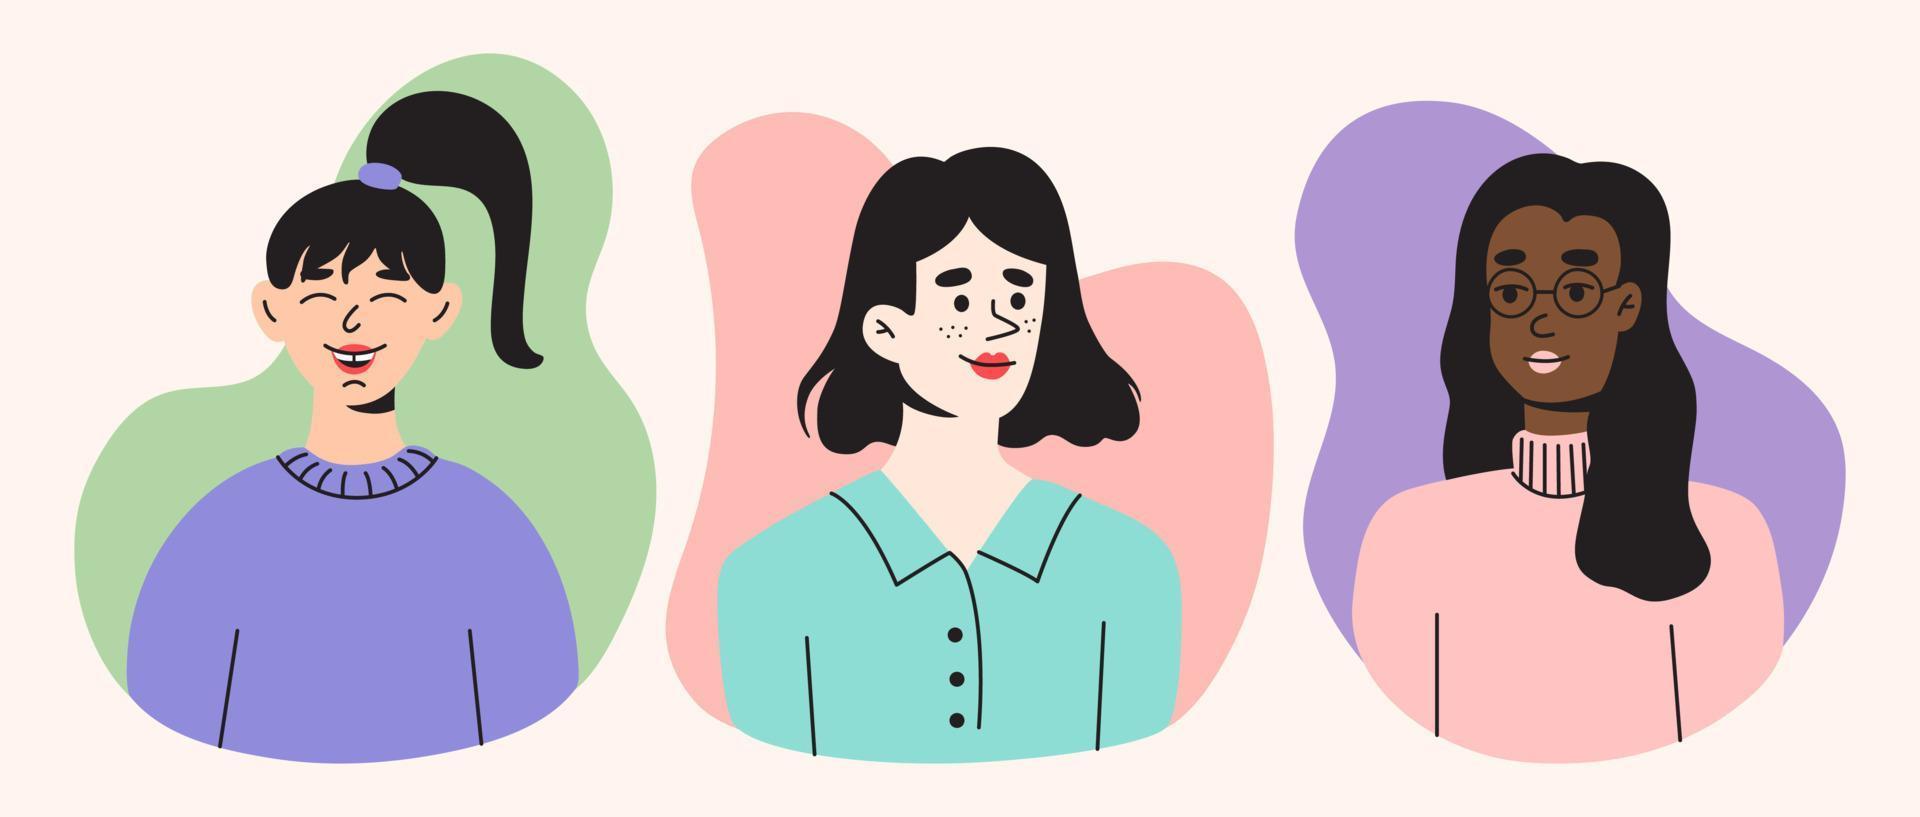 conjunto de 3 iconos de estilo plano de personajes femeninos. ilustraciones de dibujos animados modernos con fondo de efecto líquido. diseño de dibujos para web e impresión. vector